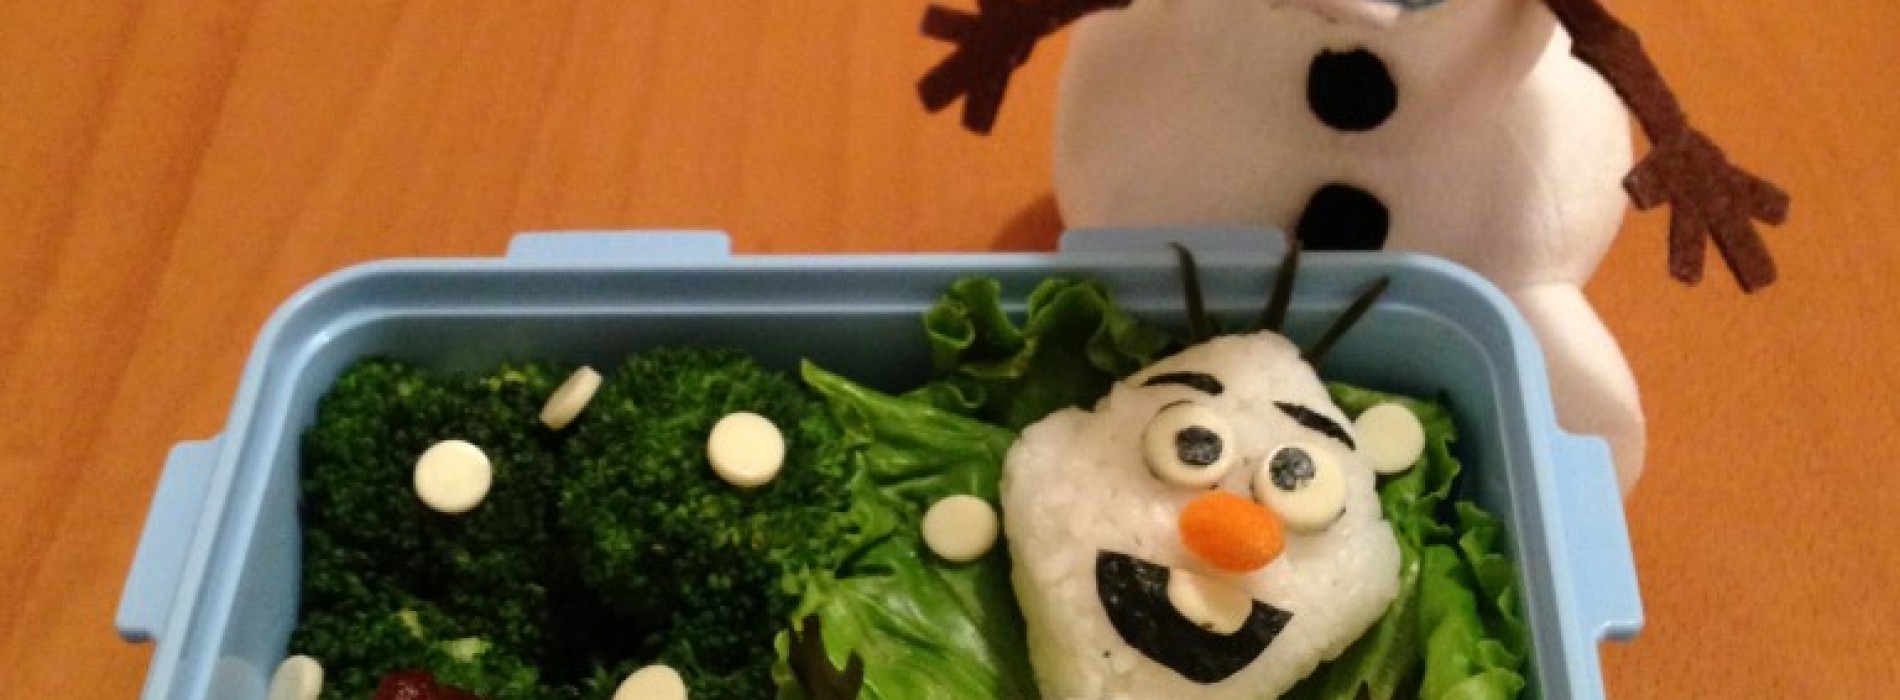 Happy Cook: Frozen雪人飯團